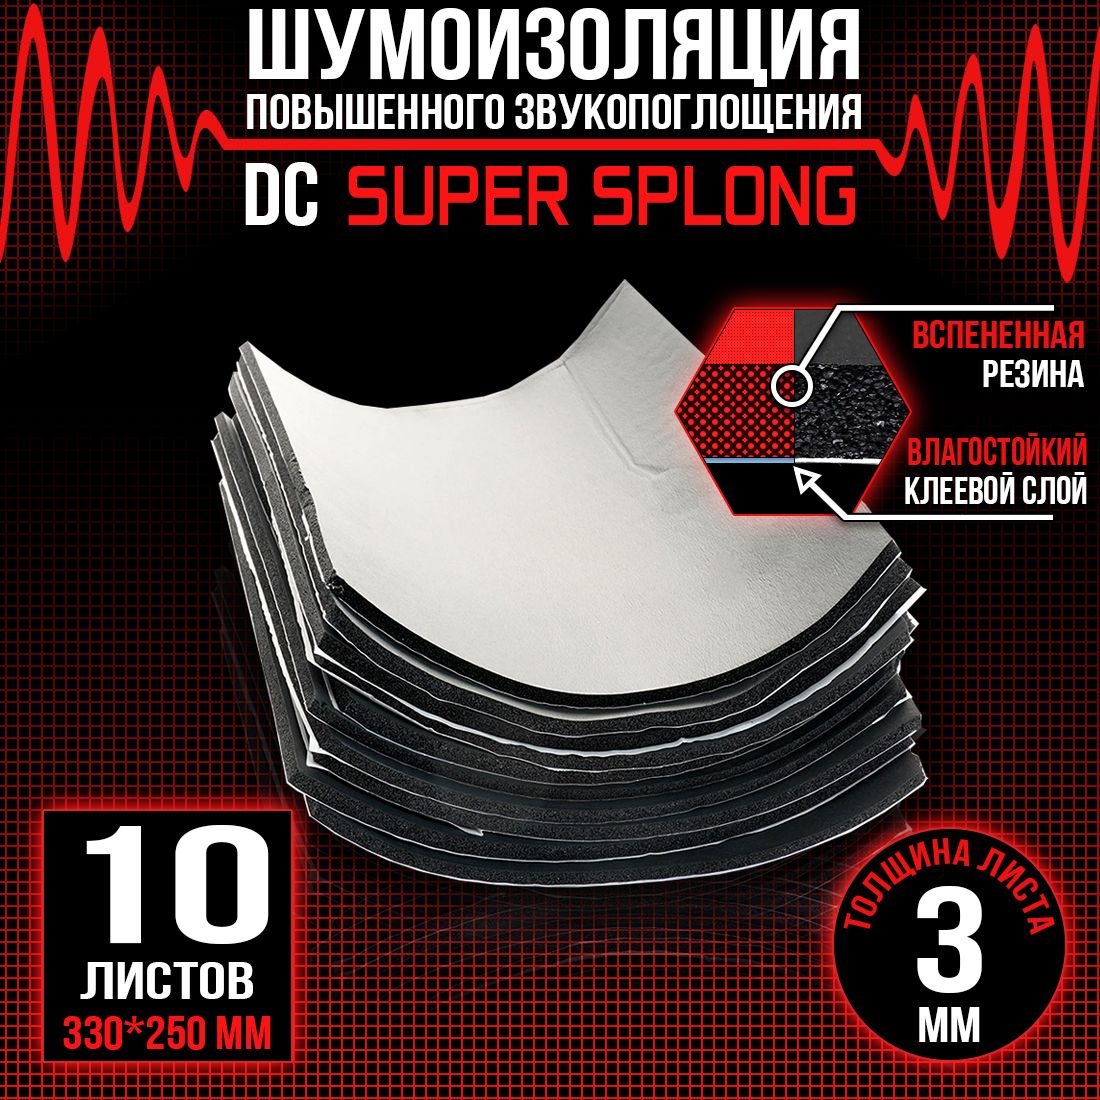 10 листов - Звукоизоляция с повышенным звукопоглощением DreamCar Super Splong 3мм 33х25см - 10 листов